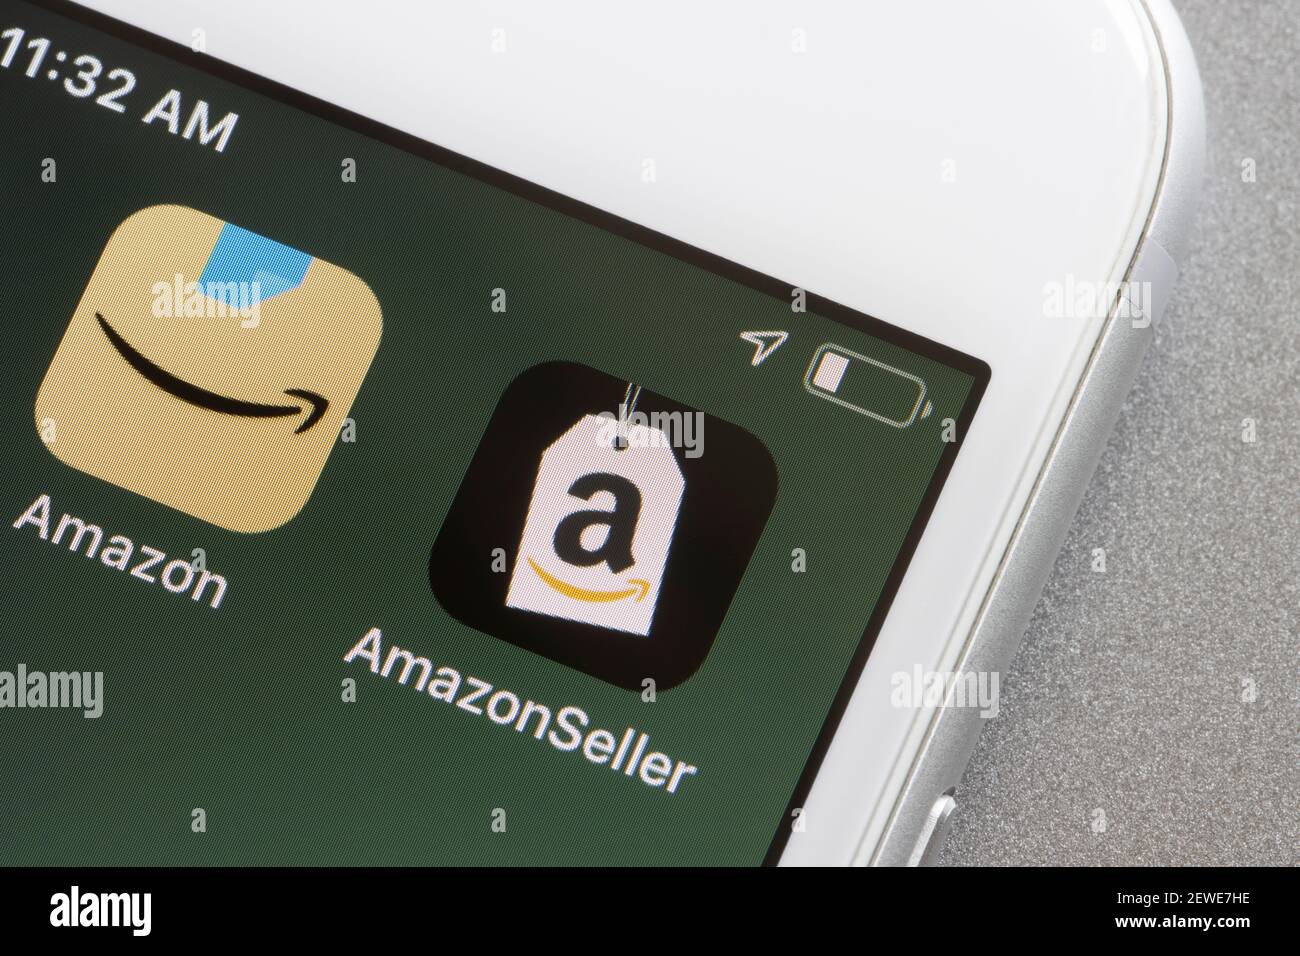 Amazon Seller y las aplicaciones de Compras se ven en un iPhone. Los vendedores de Amazon pueden optar por gestionar la gestión logística a través del servicio de Logística de Amazon o hacerlo por sí mismos. Foto de stock